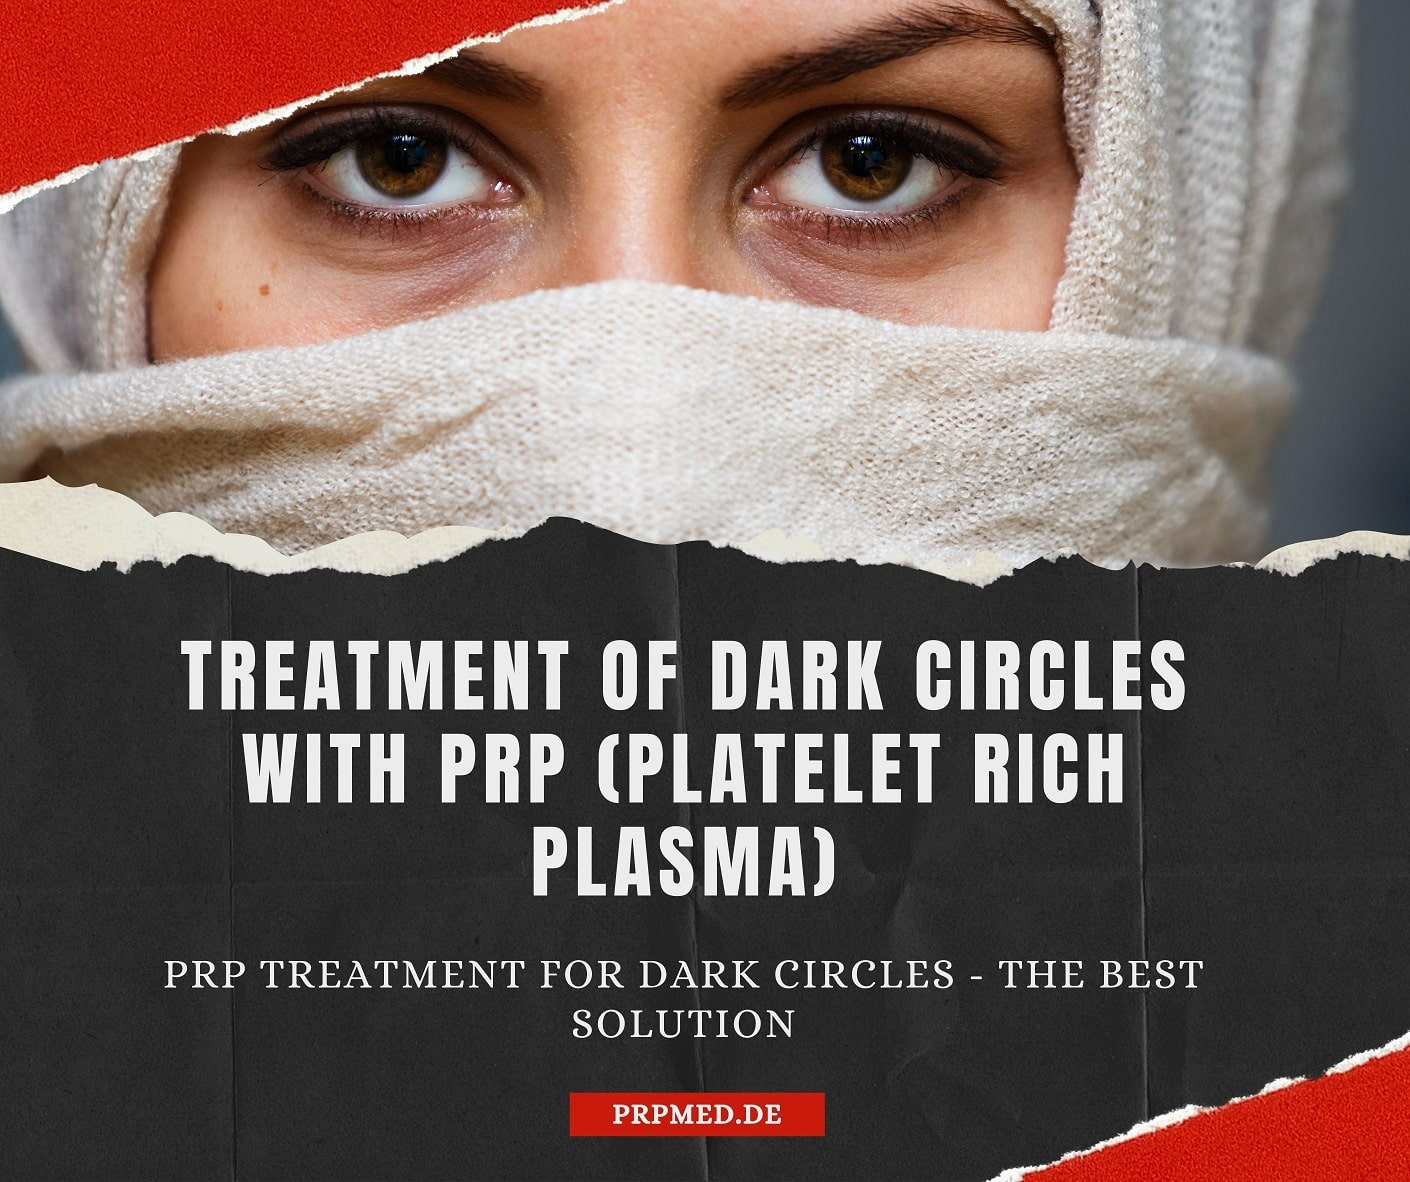 Augenringe mit Vampir Lift / PRP-Therapie behandeln